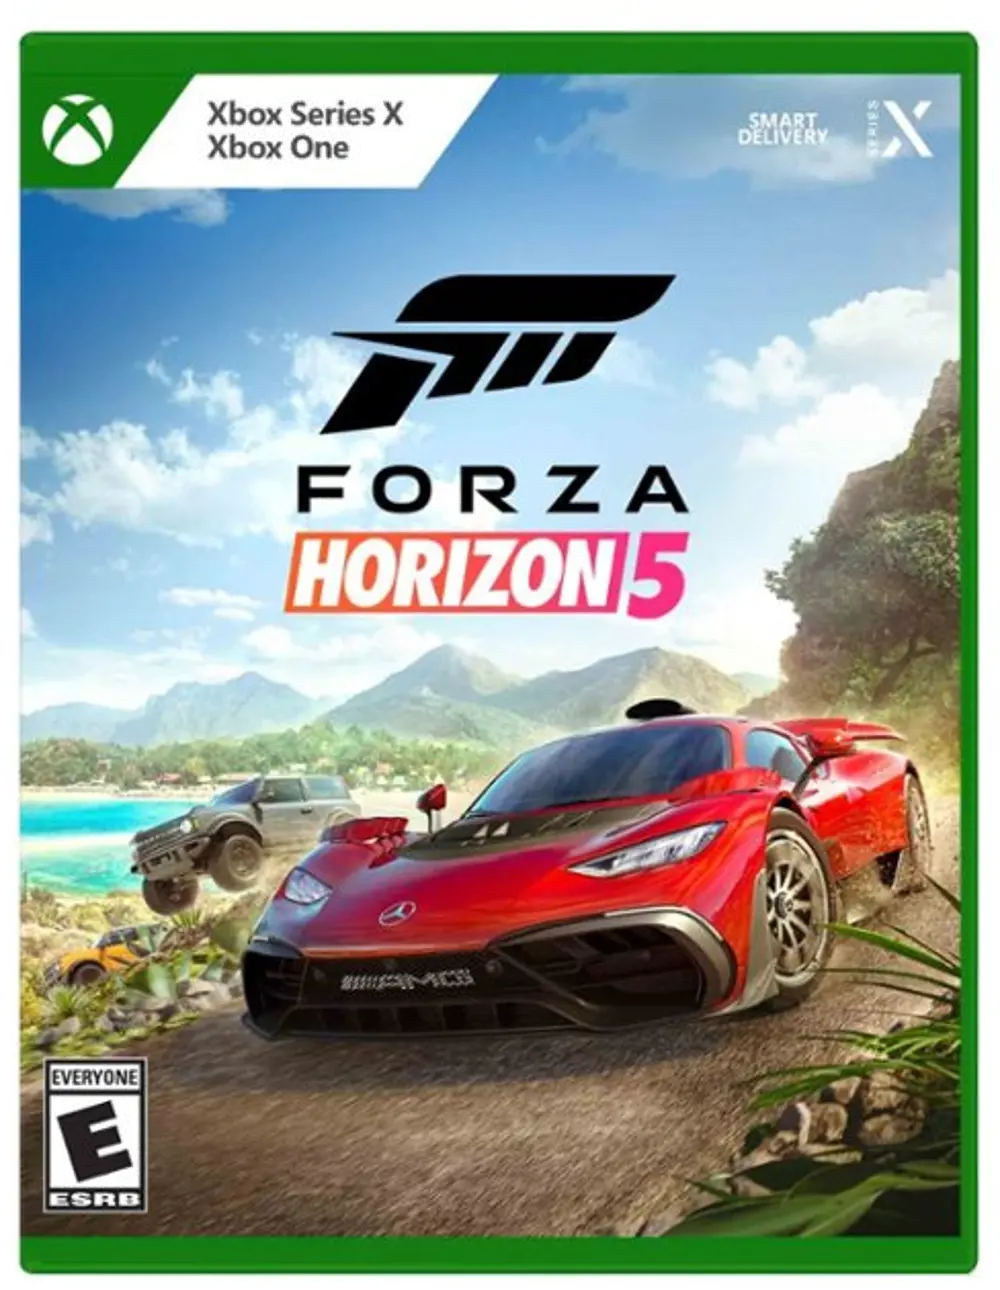 Forza Horizon 5 Xbox One, Xbox Series X-1